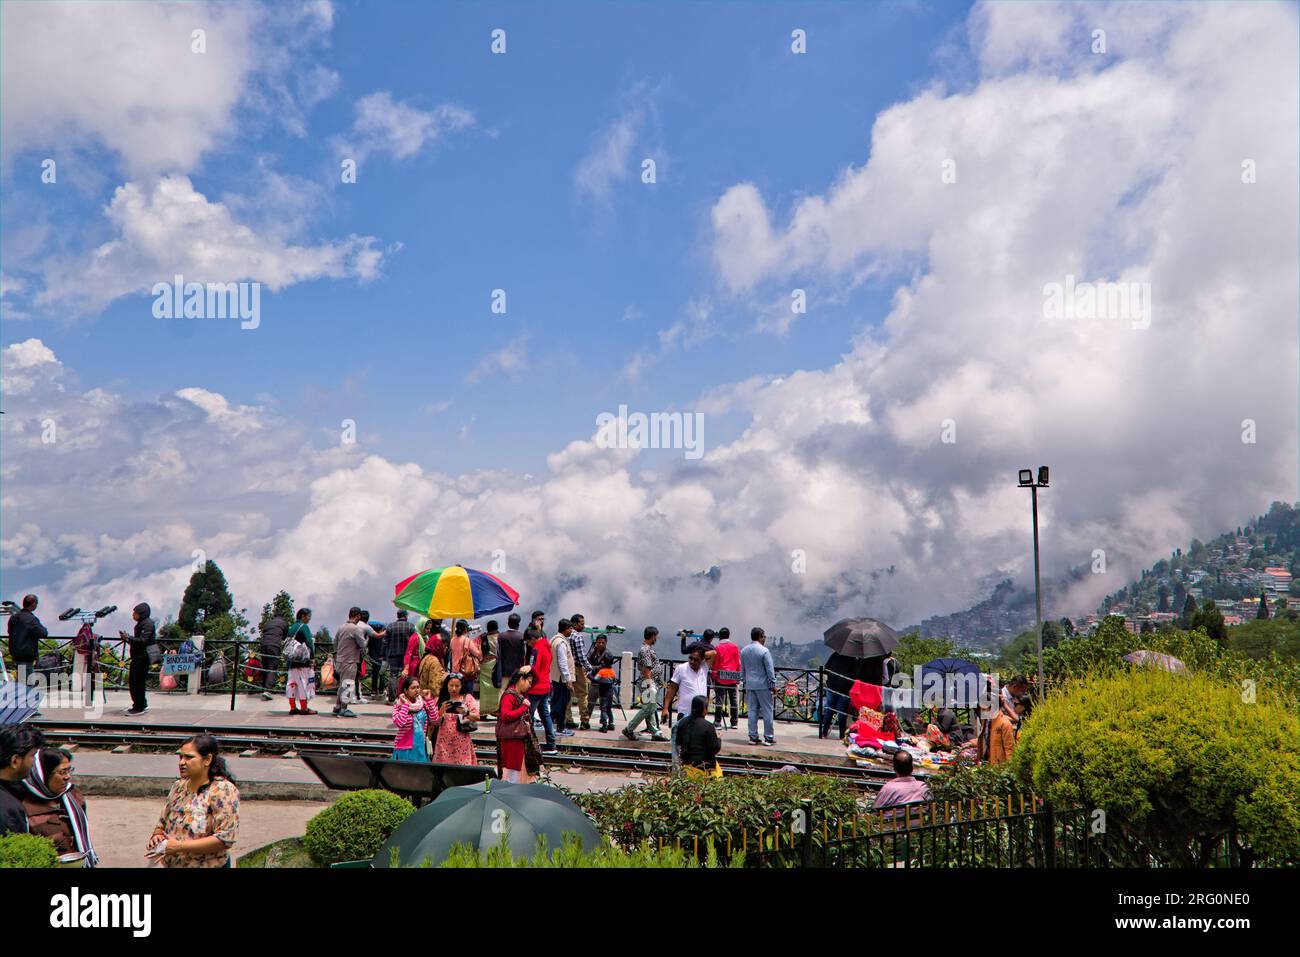 24,692 Darjeeling Images, Stock Photos, 3D objects, & Vectors | Shutterstock